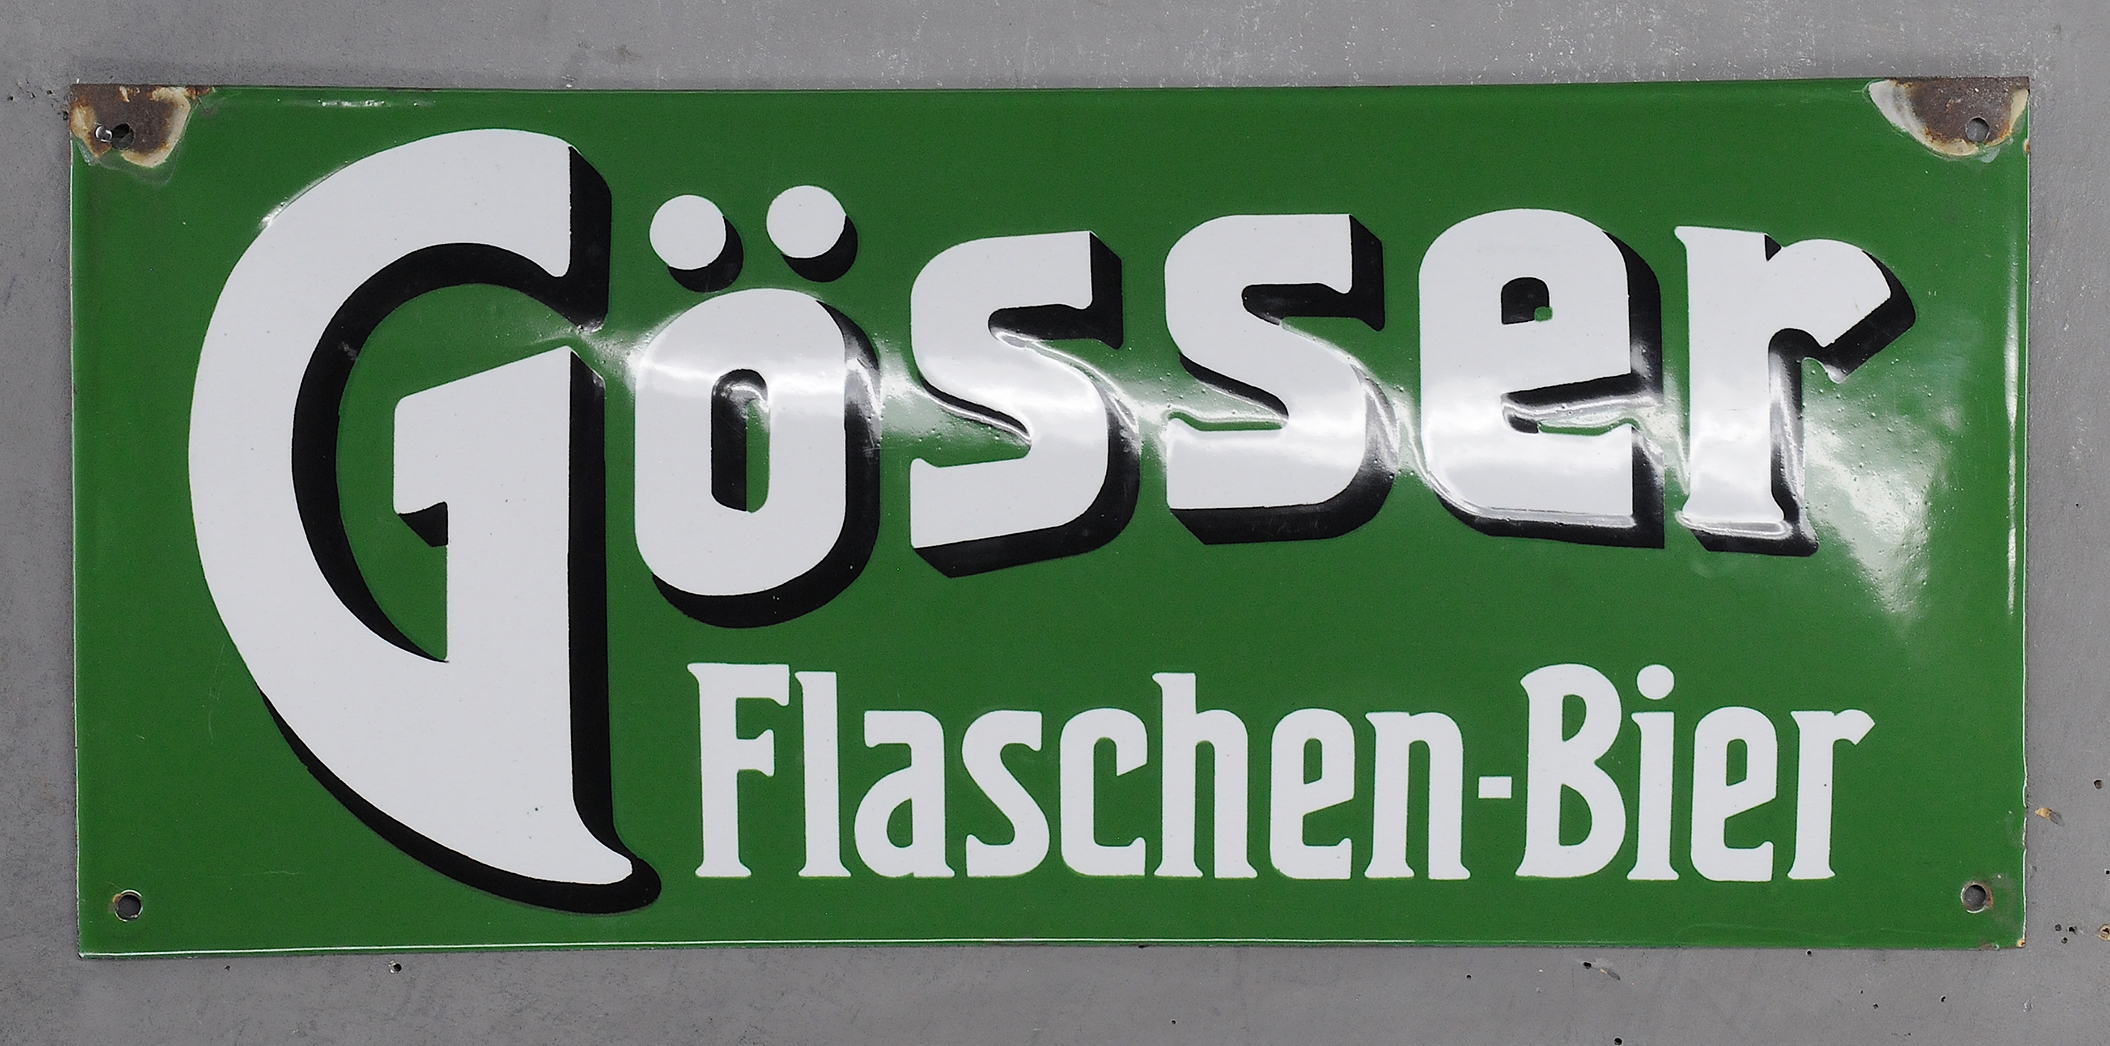 Gösser Flaschen-Bier - Image 3 of 3